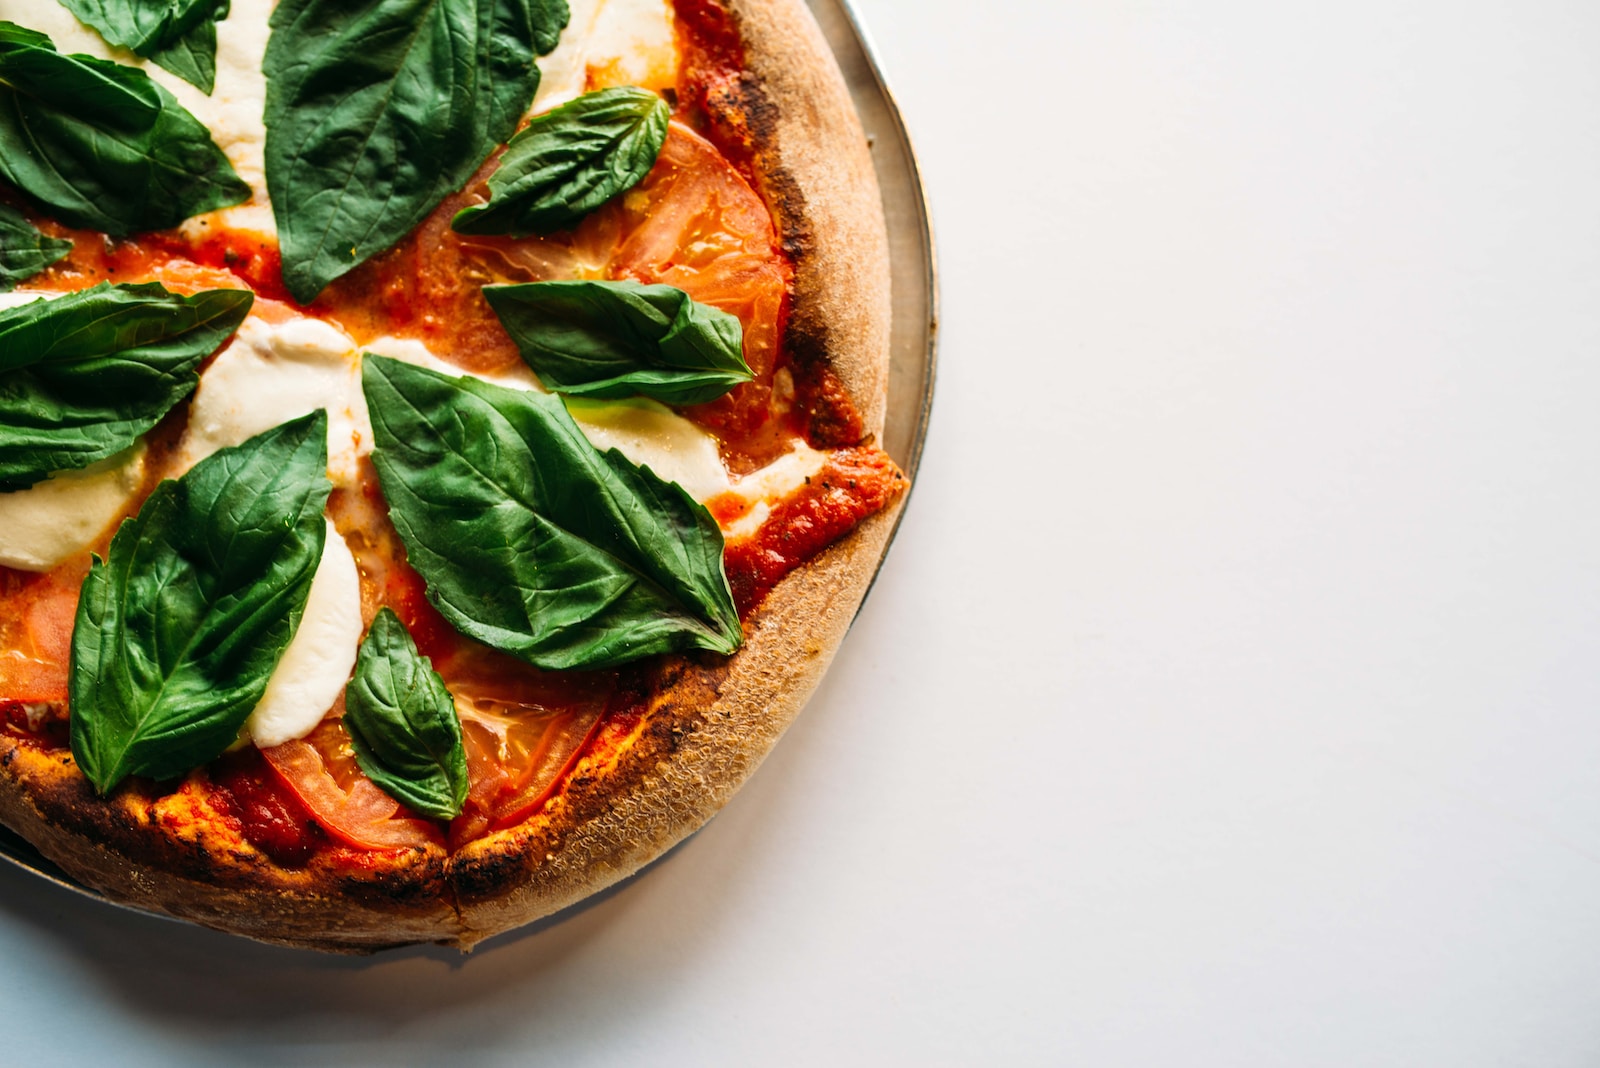 Pizza jako danie na imprezę – przepisy na pizzę w większym formacie